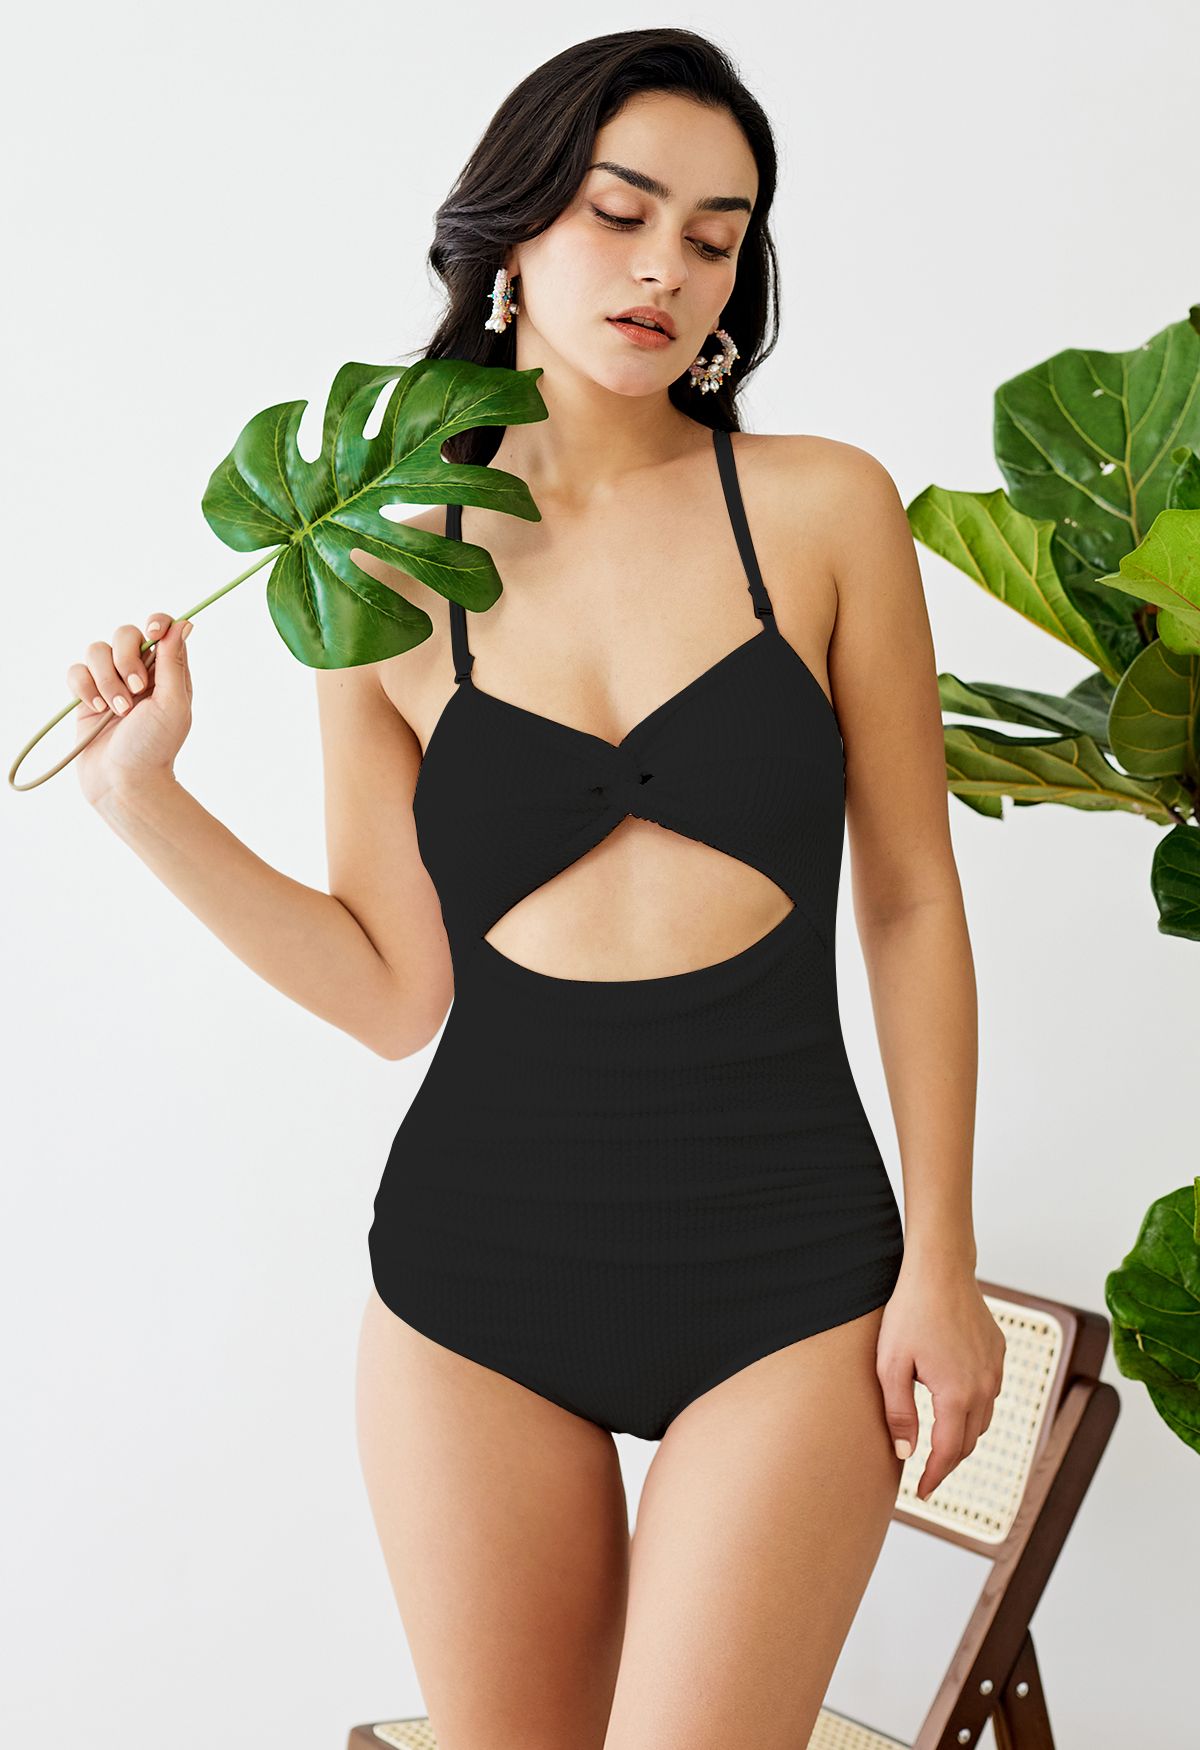 ملابس السباحة الملتوية المموجة المحبوكة باللون الأسود